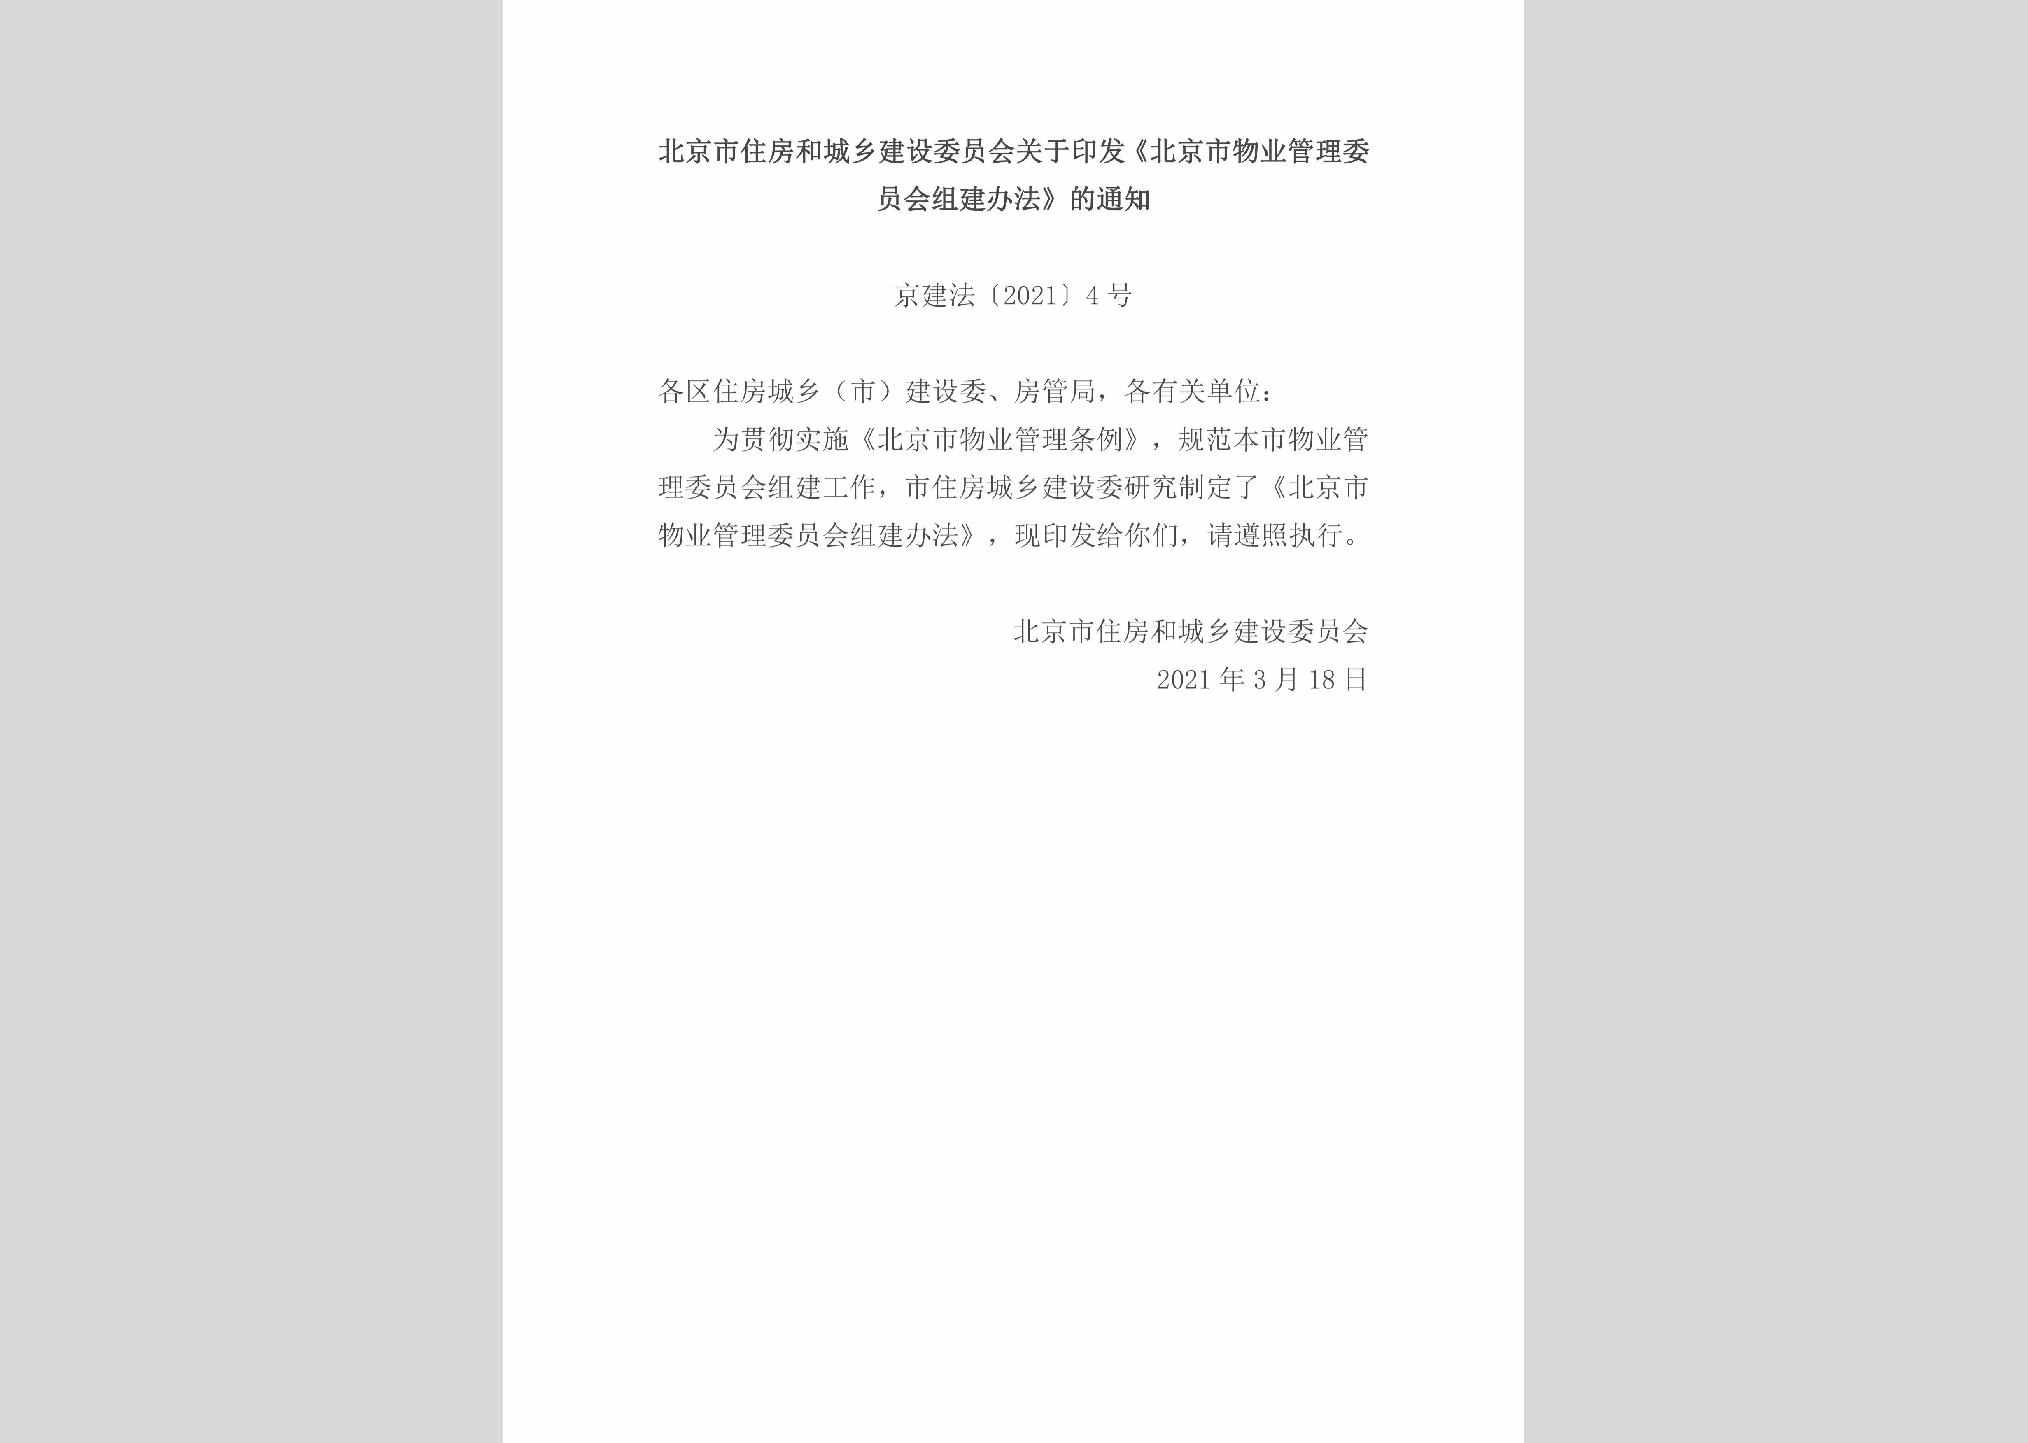 京建法[2021]4号：北京市住房和城乡建设委员会关于印发《北京市物业管理委员会组建办法》的通知